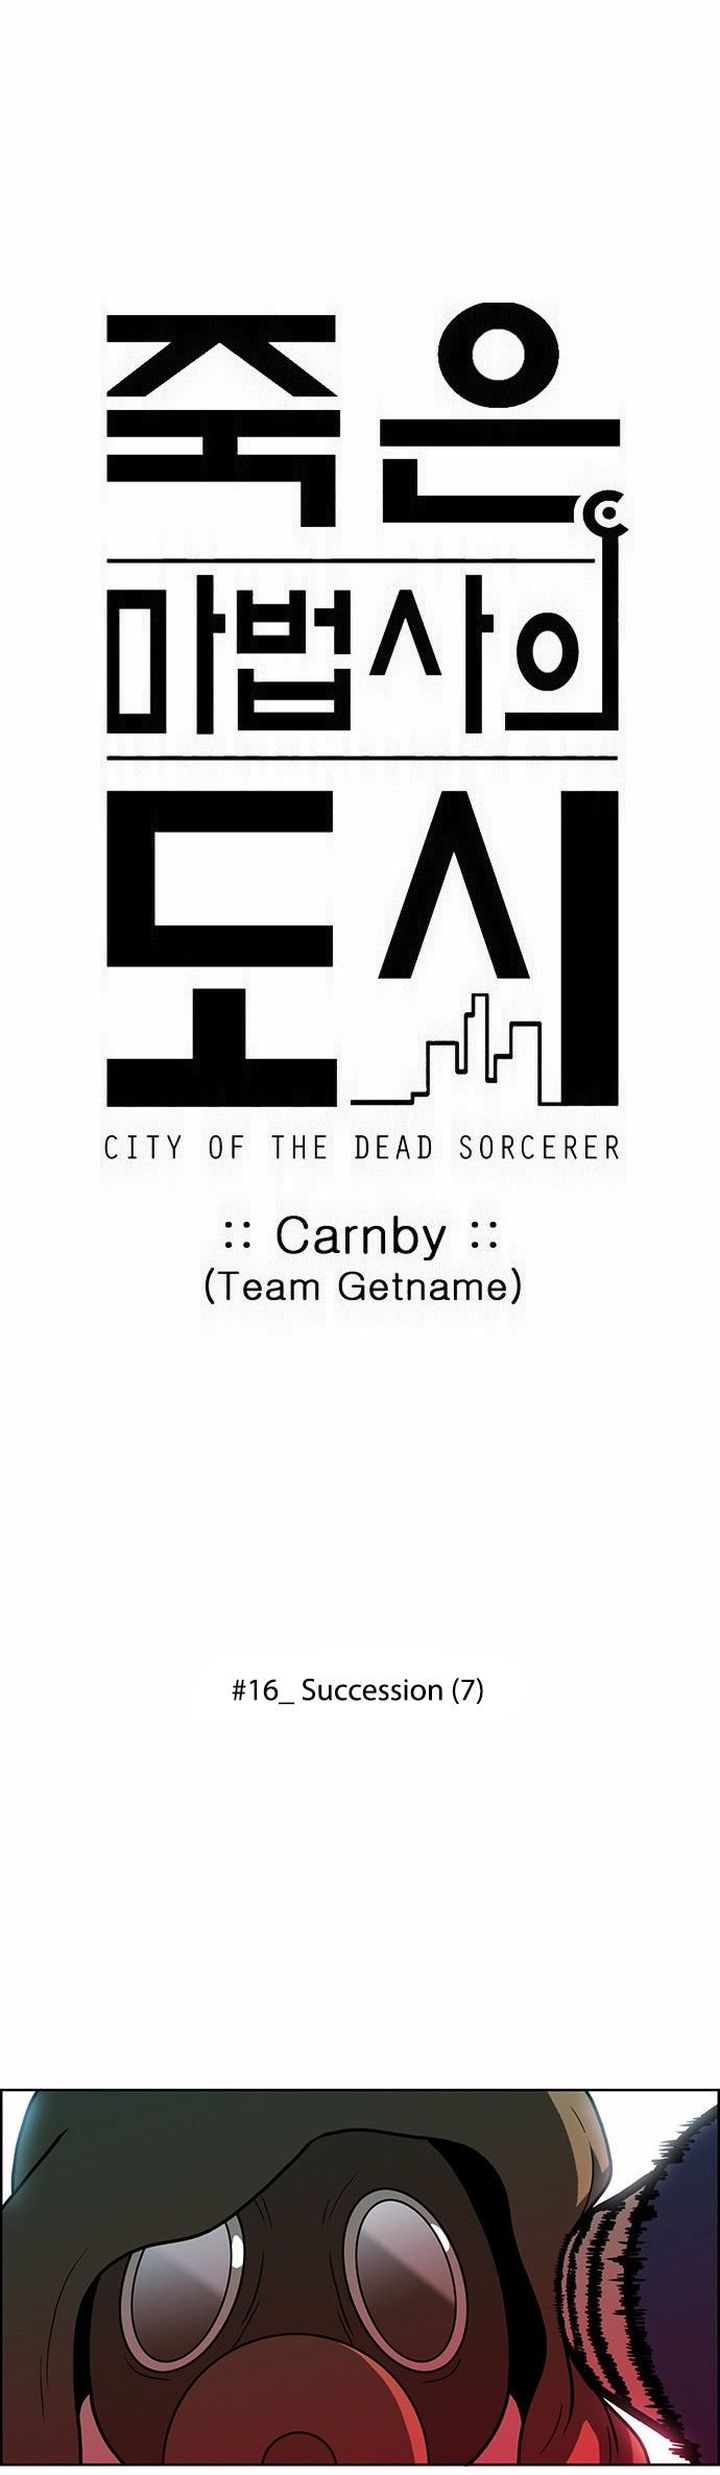 city_of_dead_sorcerer_197_1